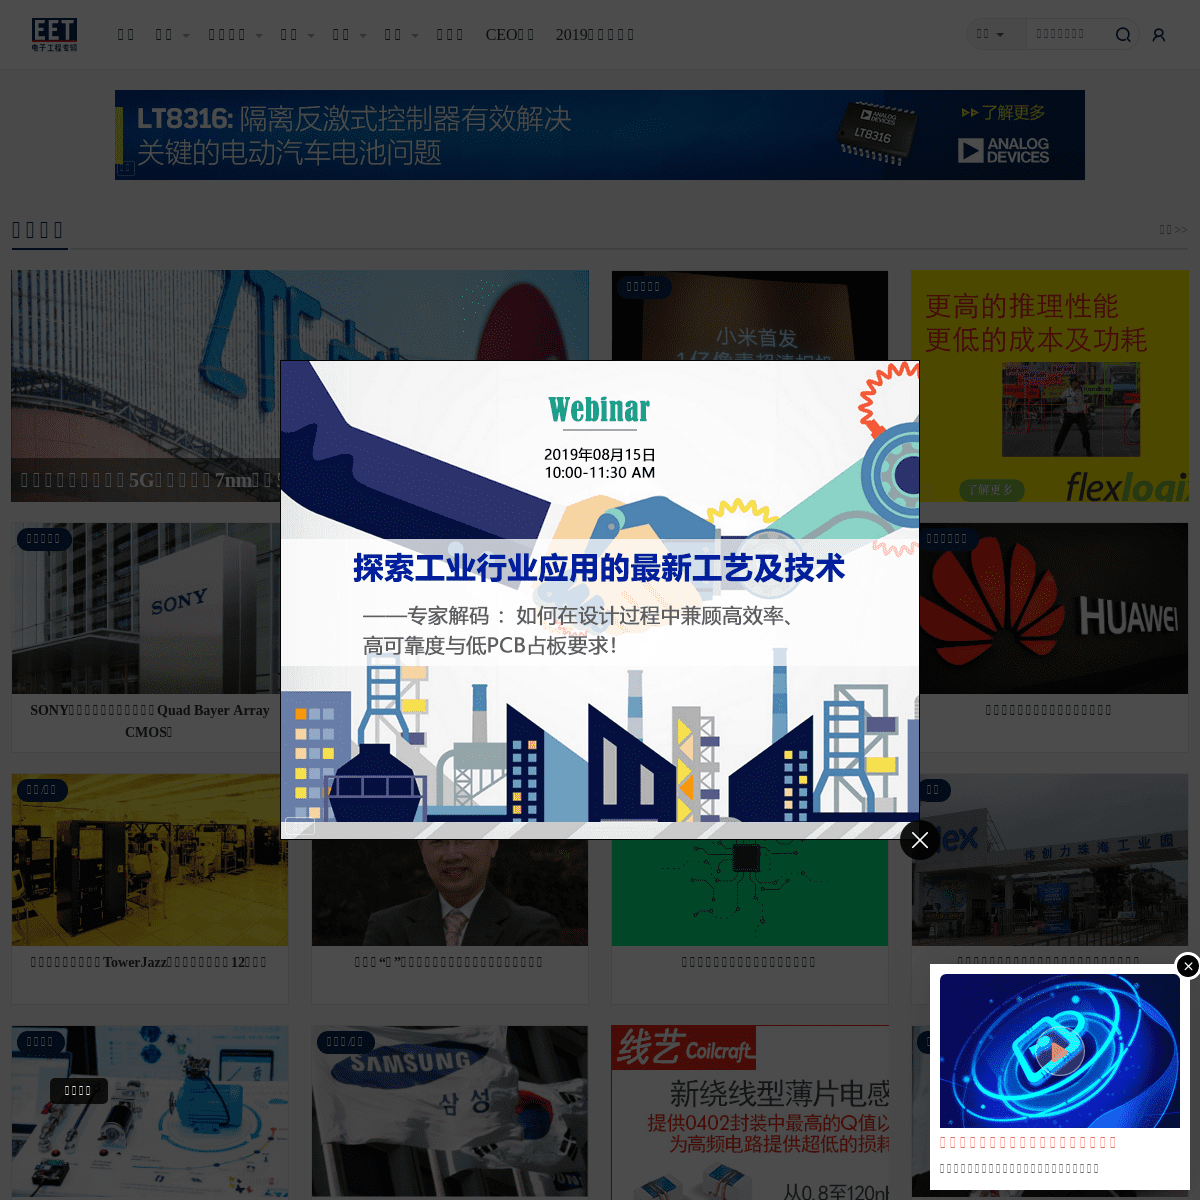 电子工程专辑 EE Times China -提供有关电子工程及电子设计的最新资讯和科技趋势